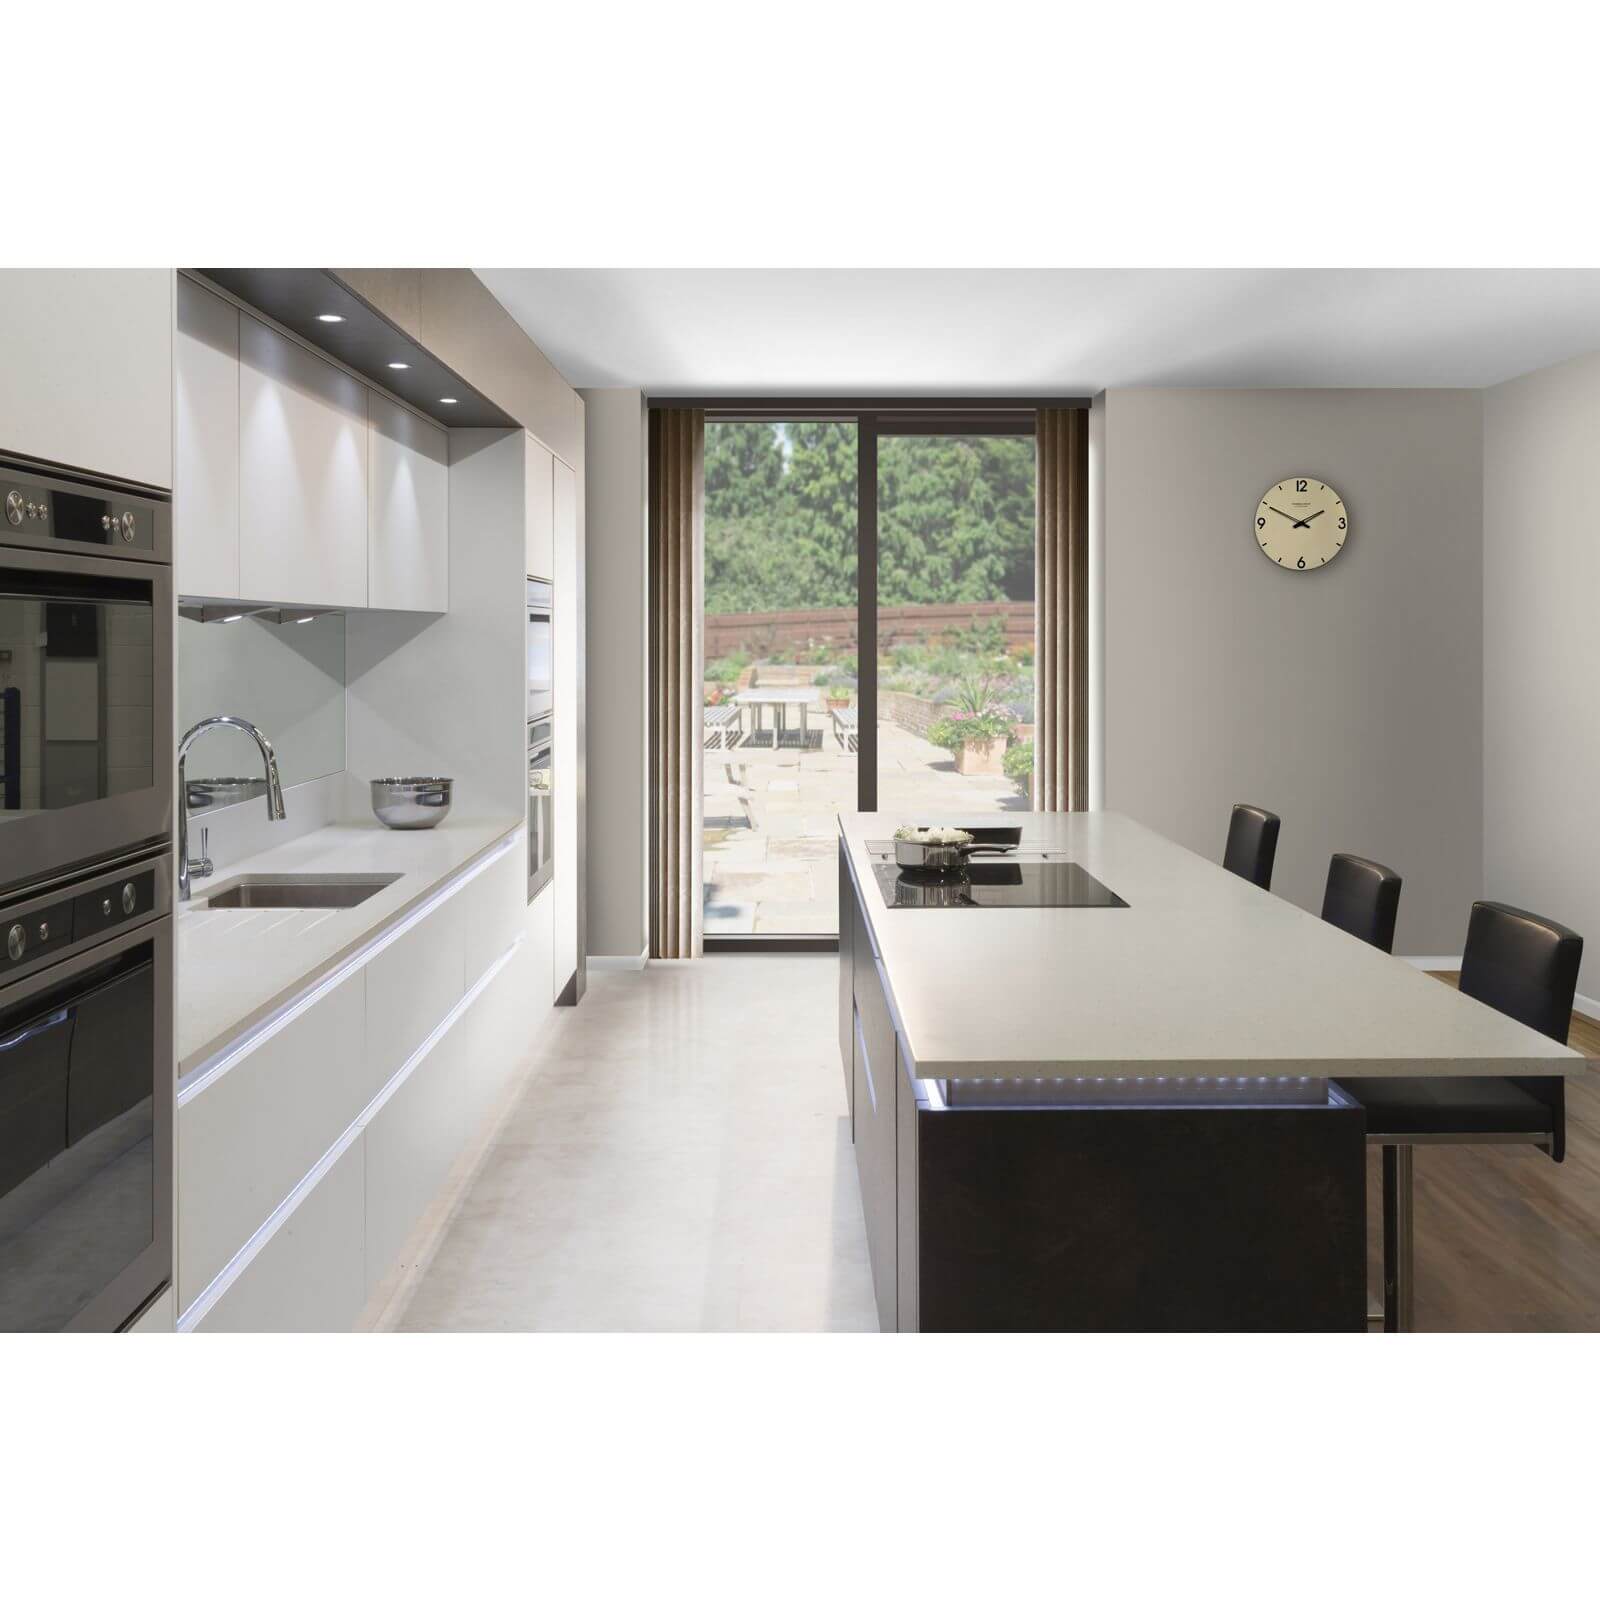 Minerva Grey Crystal Kitchen Worktop - 150 x 60 x 2.5cm